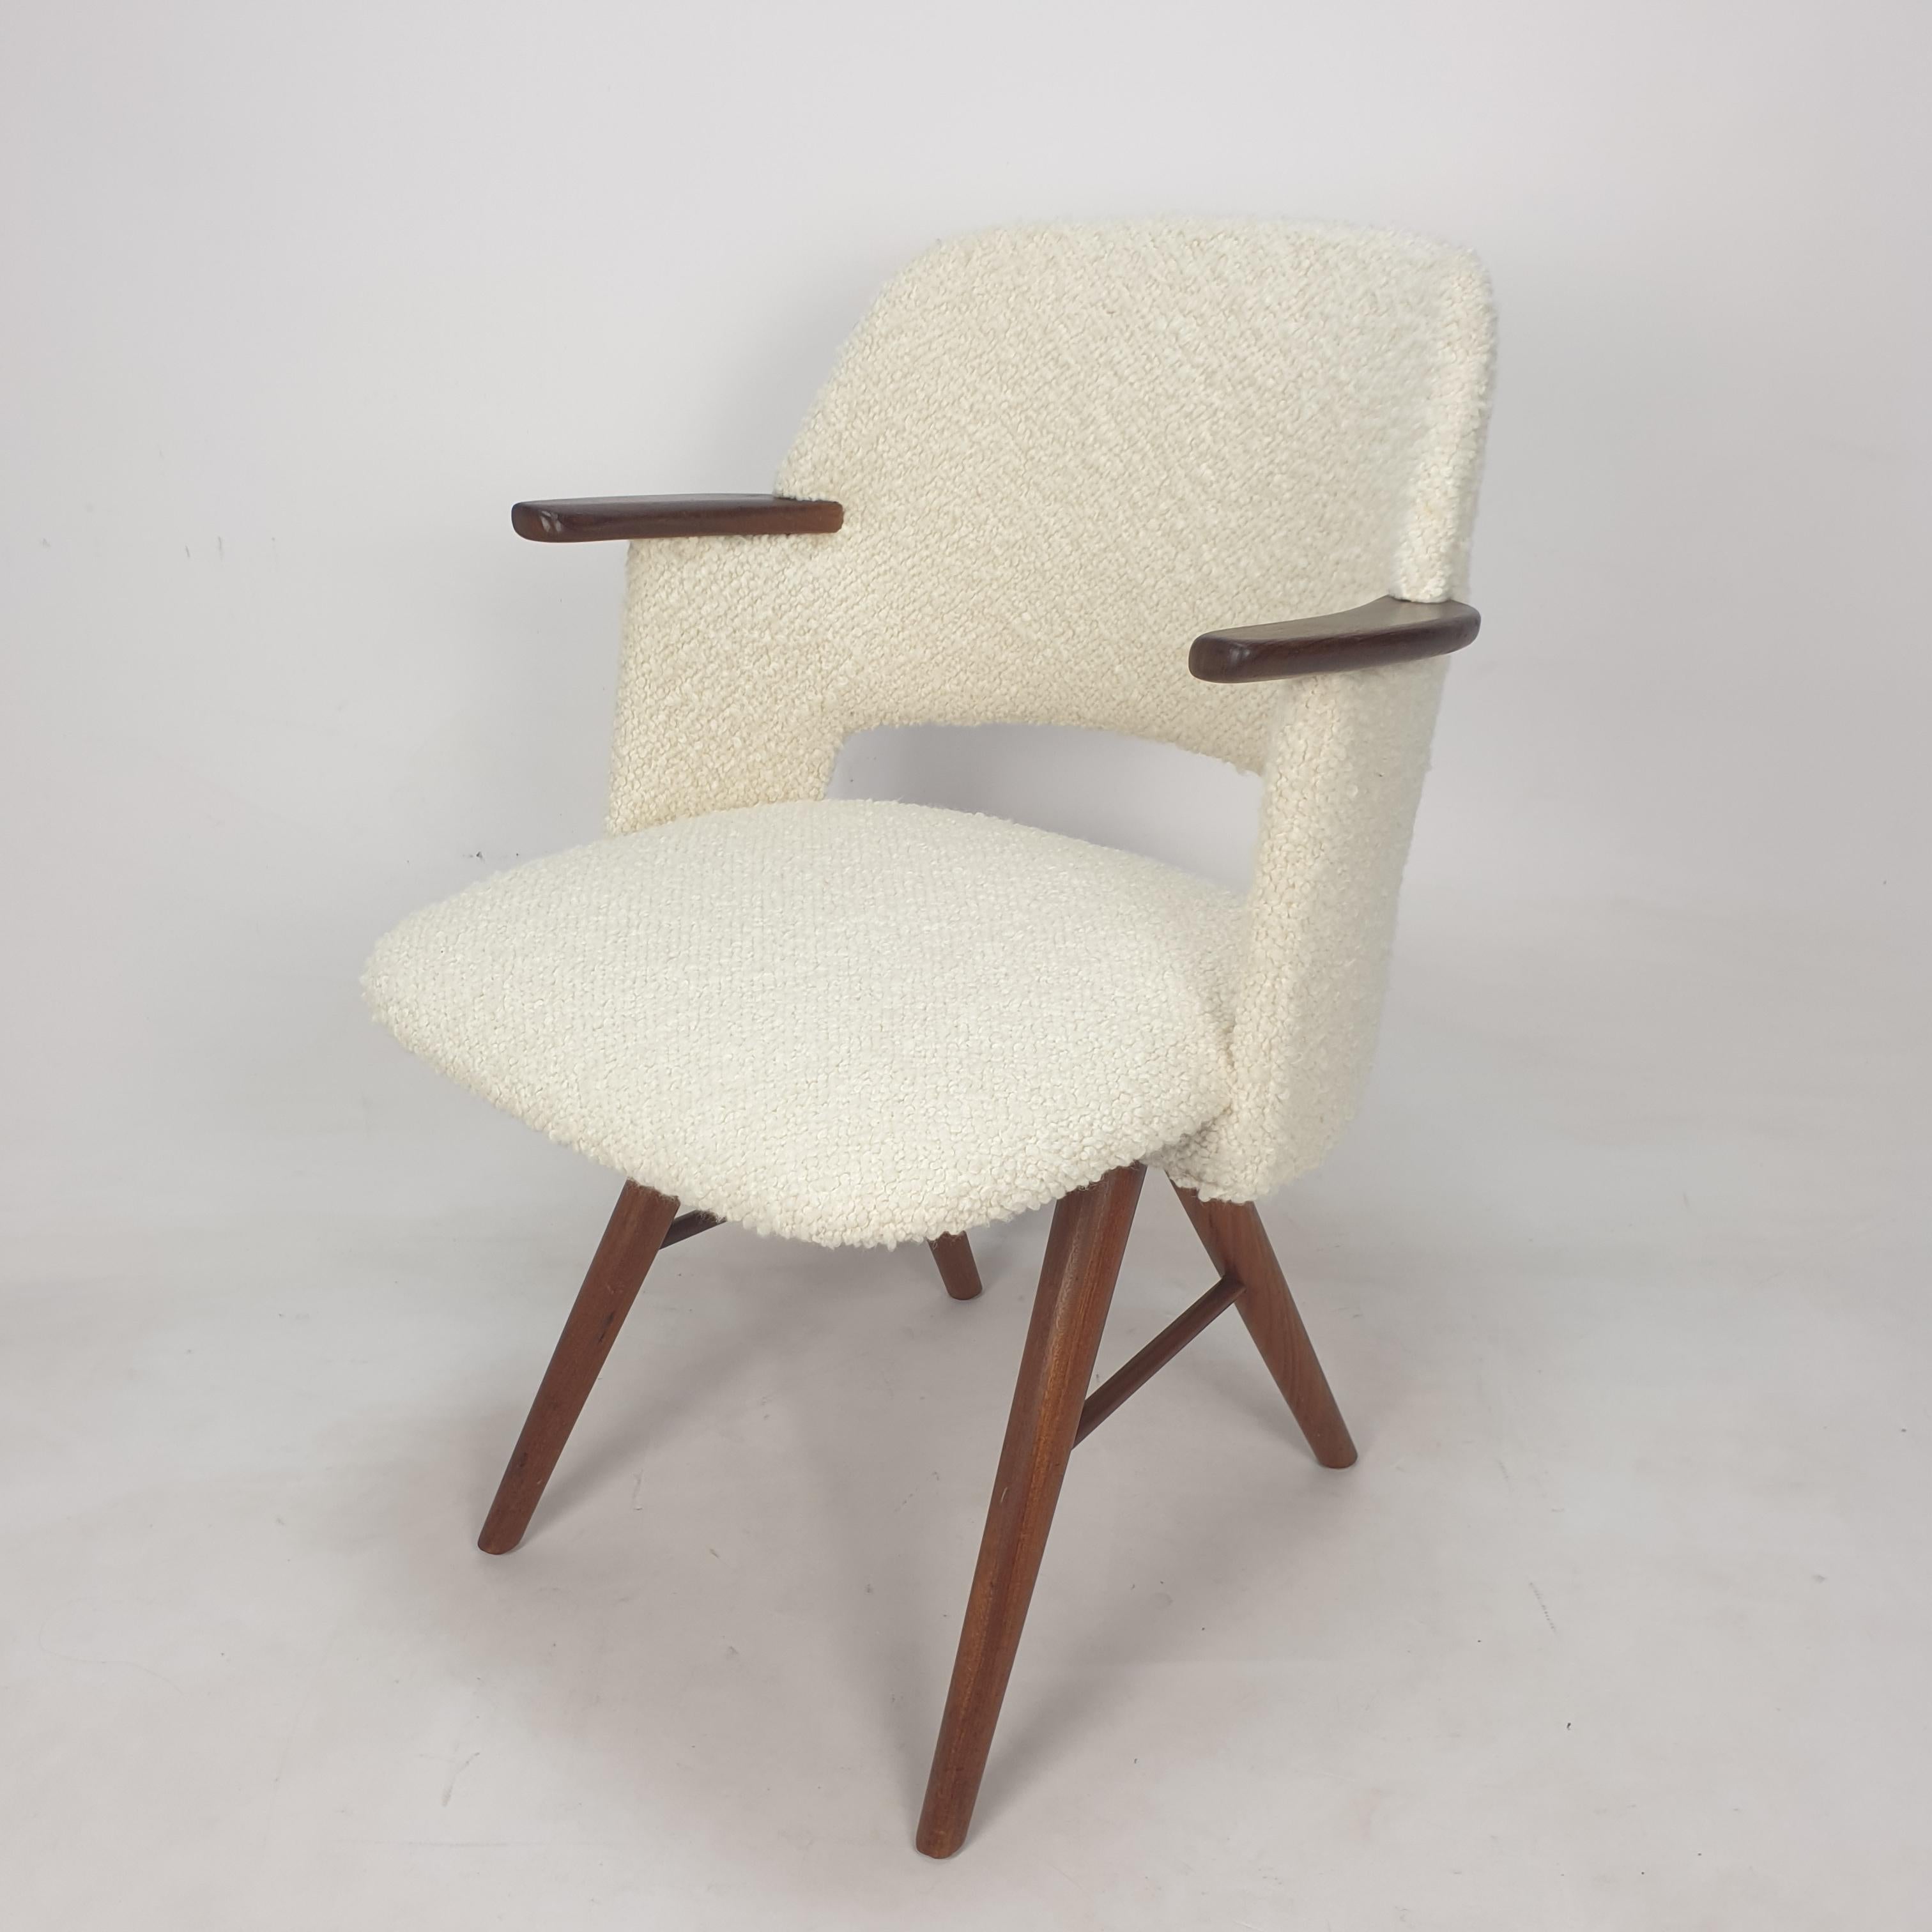 Dieser sehr bequeme Beistellstuhl aus der Mitte des Jahrhunderts, Modell FT30, ist ein Entwurf von Cees Braakman.
Es wurde in den 50er Jahren von UMS Pastoe in den Niederlanden hergestellt. 

Die Beine und die Armlehnen sind aus Eichenholz